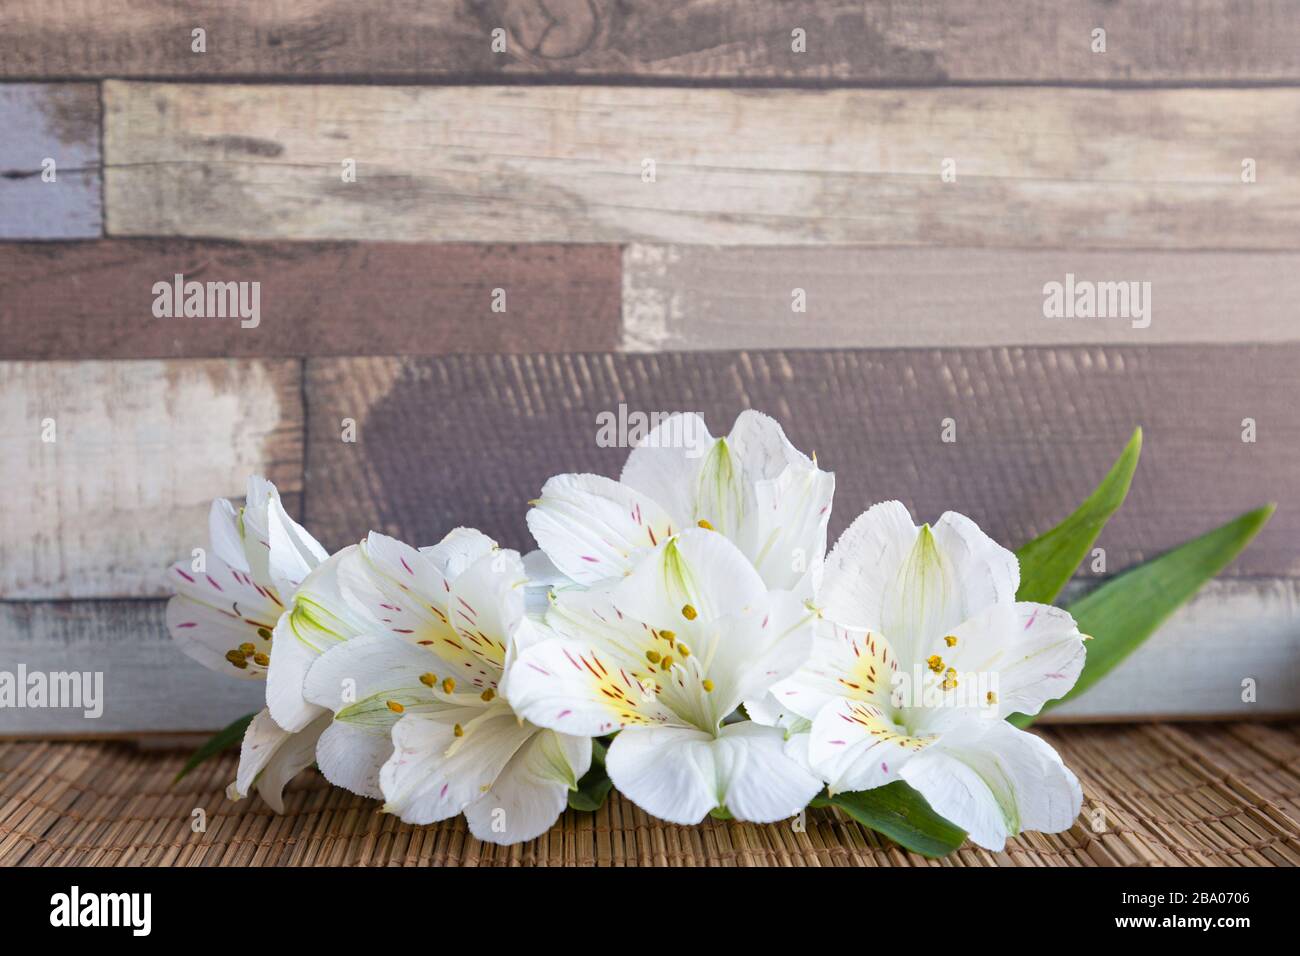 Contexte avec fleurs blanches d'Alstroemeria ou nénuphar péruvien ou Lily des Incas avec fond en bois naturel Banque D'Images